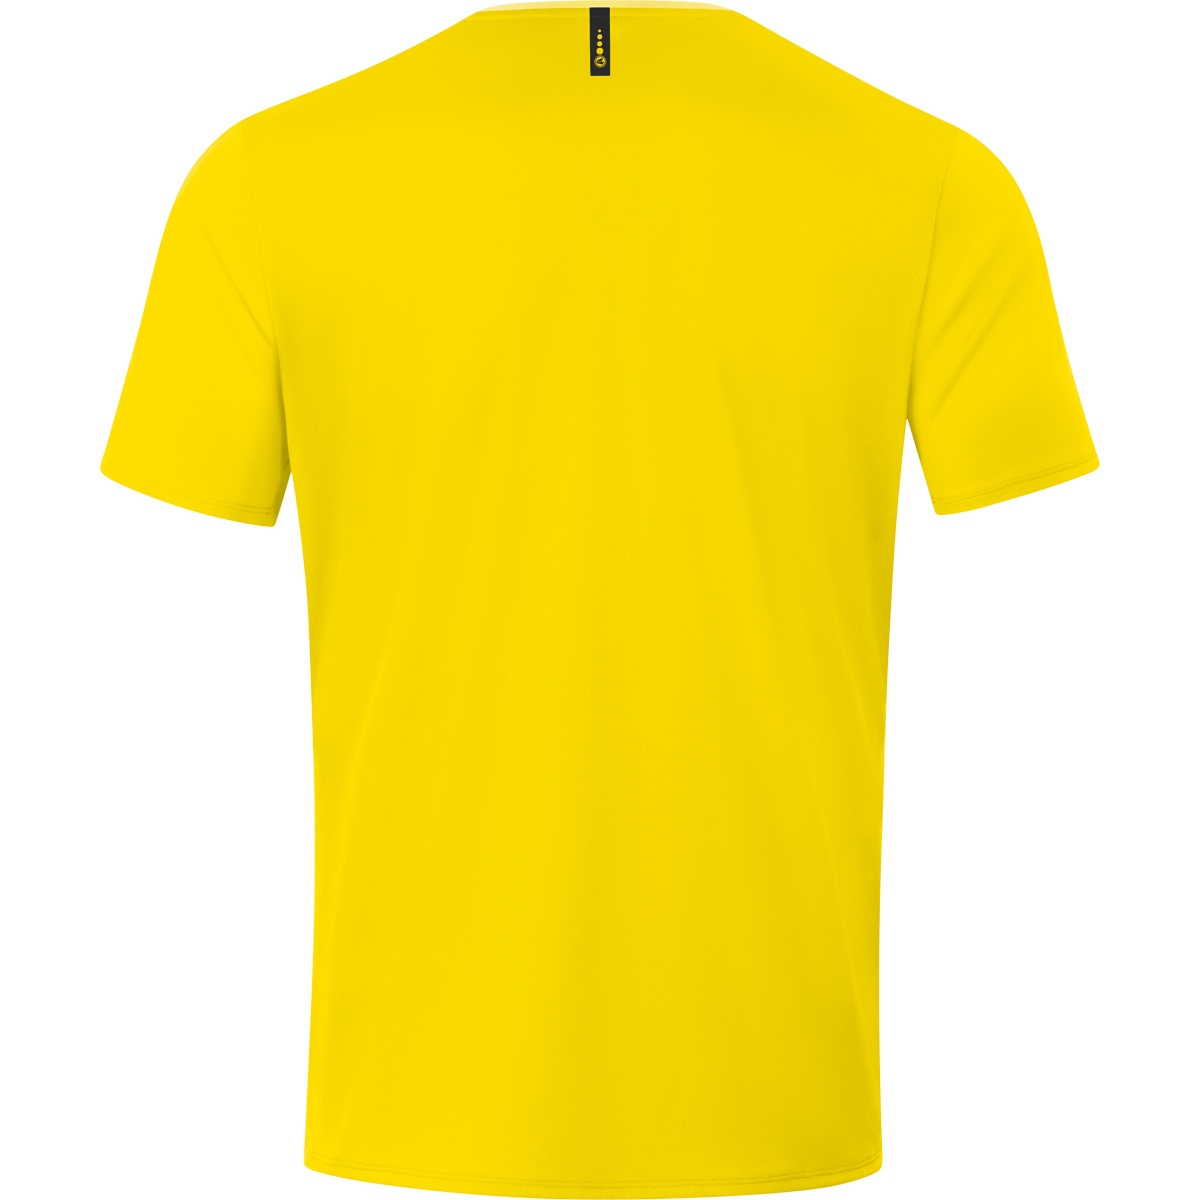 JAKO T-Shirt 6120 Herren, Gr. Champ citro/citro light, 2.0 4XL